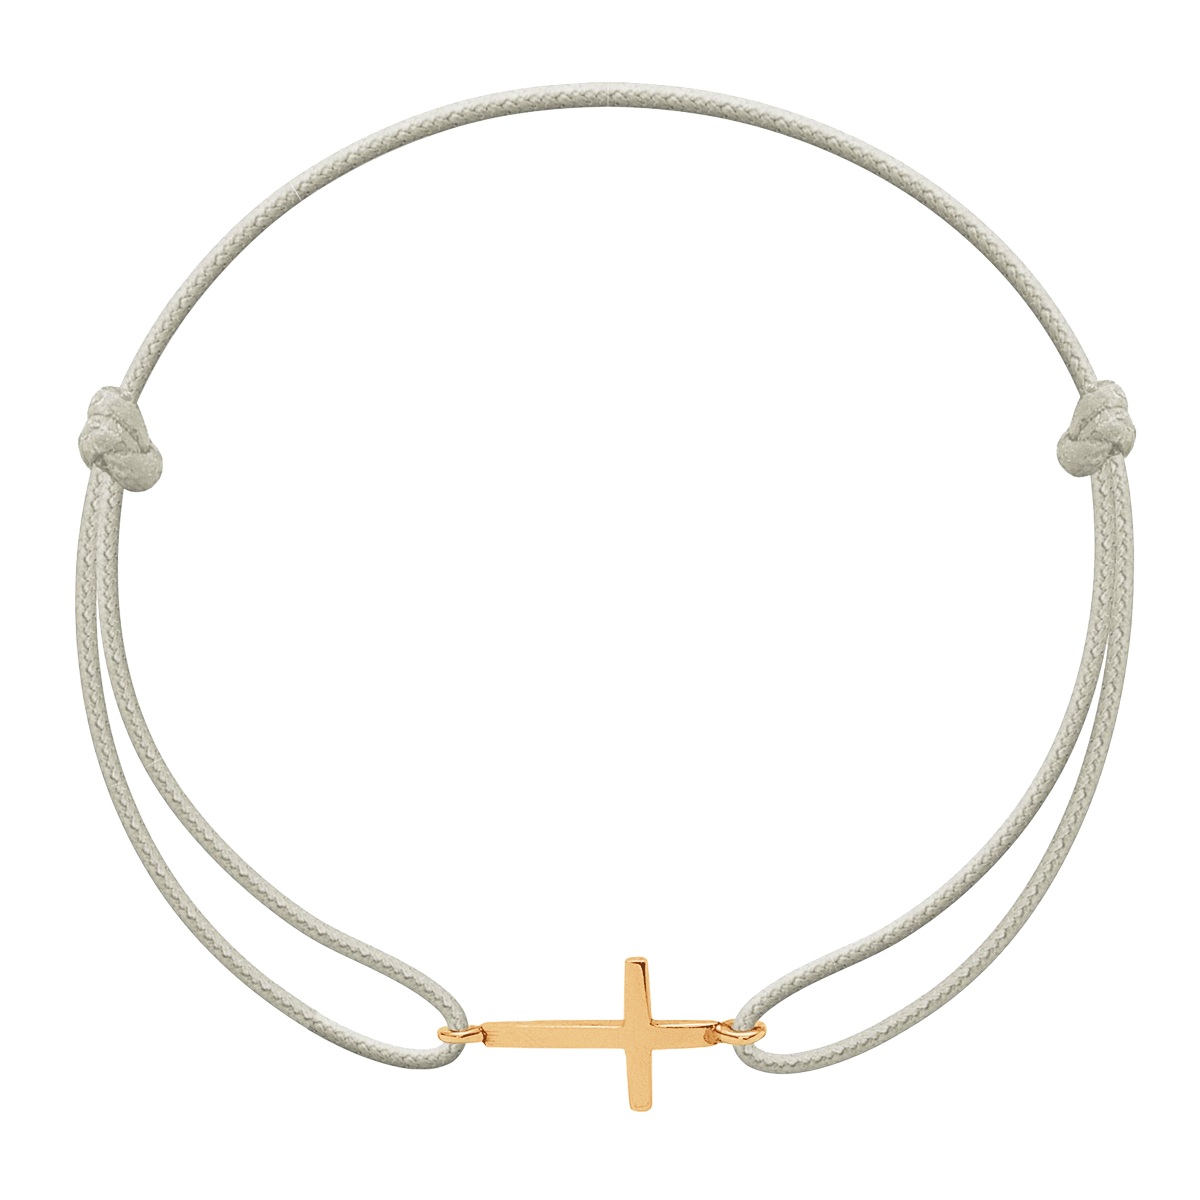 Armband mit einem goldplattierten Kreuz auf einer dünnen Perlenschnur